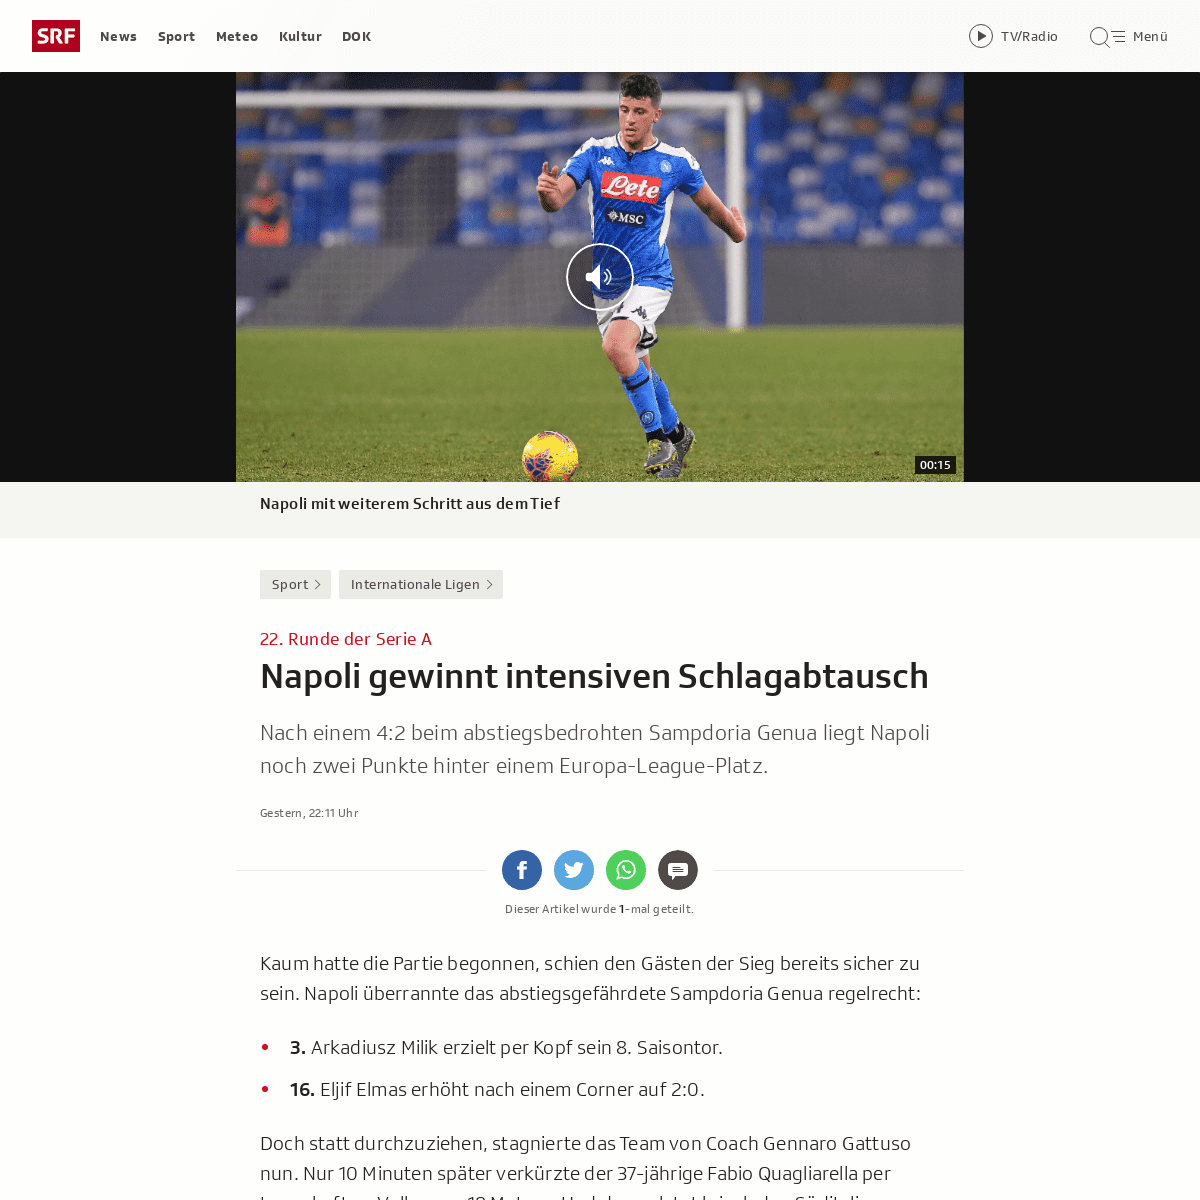 A complete backup of www.srf.ch/sport/fussball/internationale-ligen/22-runde-der-serie-a-napoli-gewinnt-intensiven-schlagabtausc